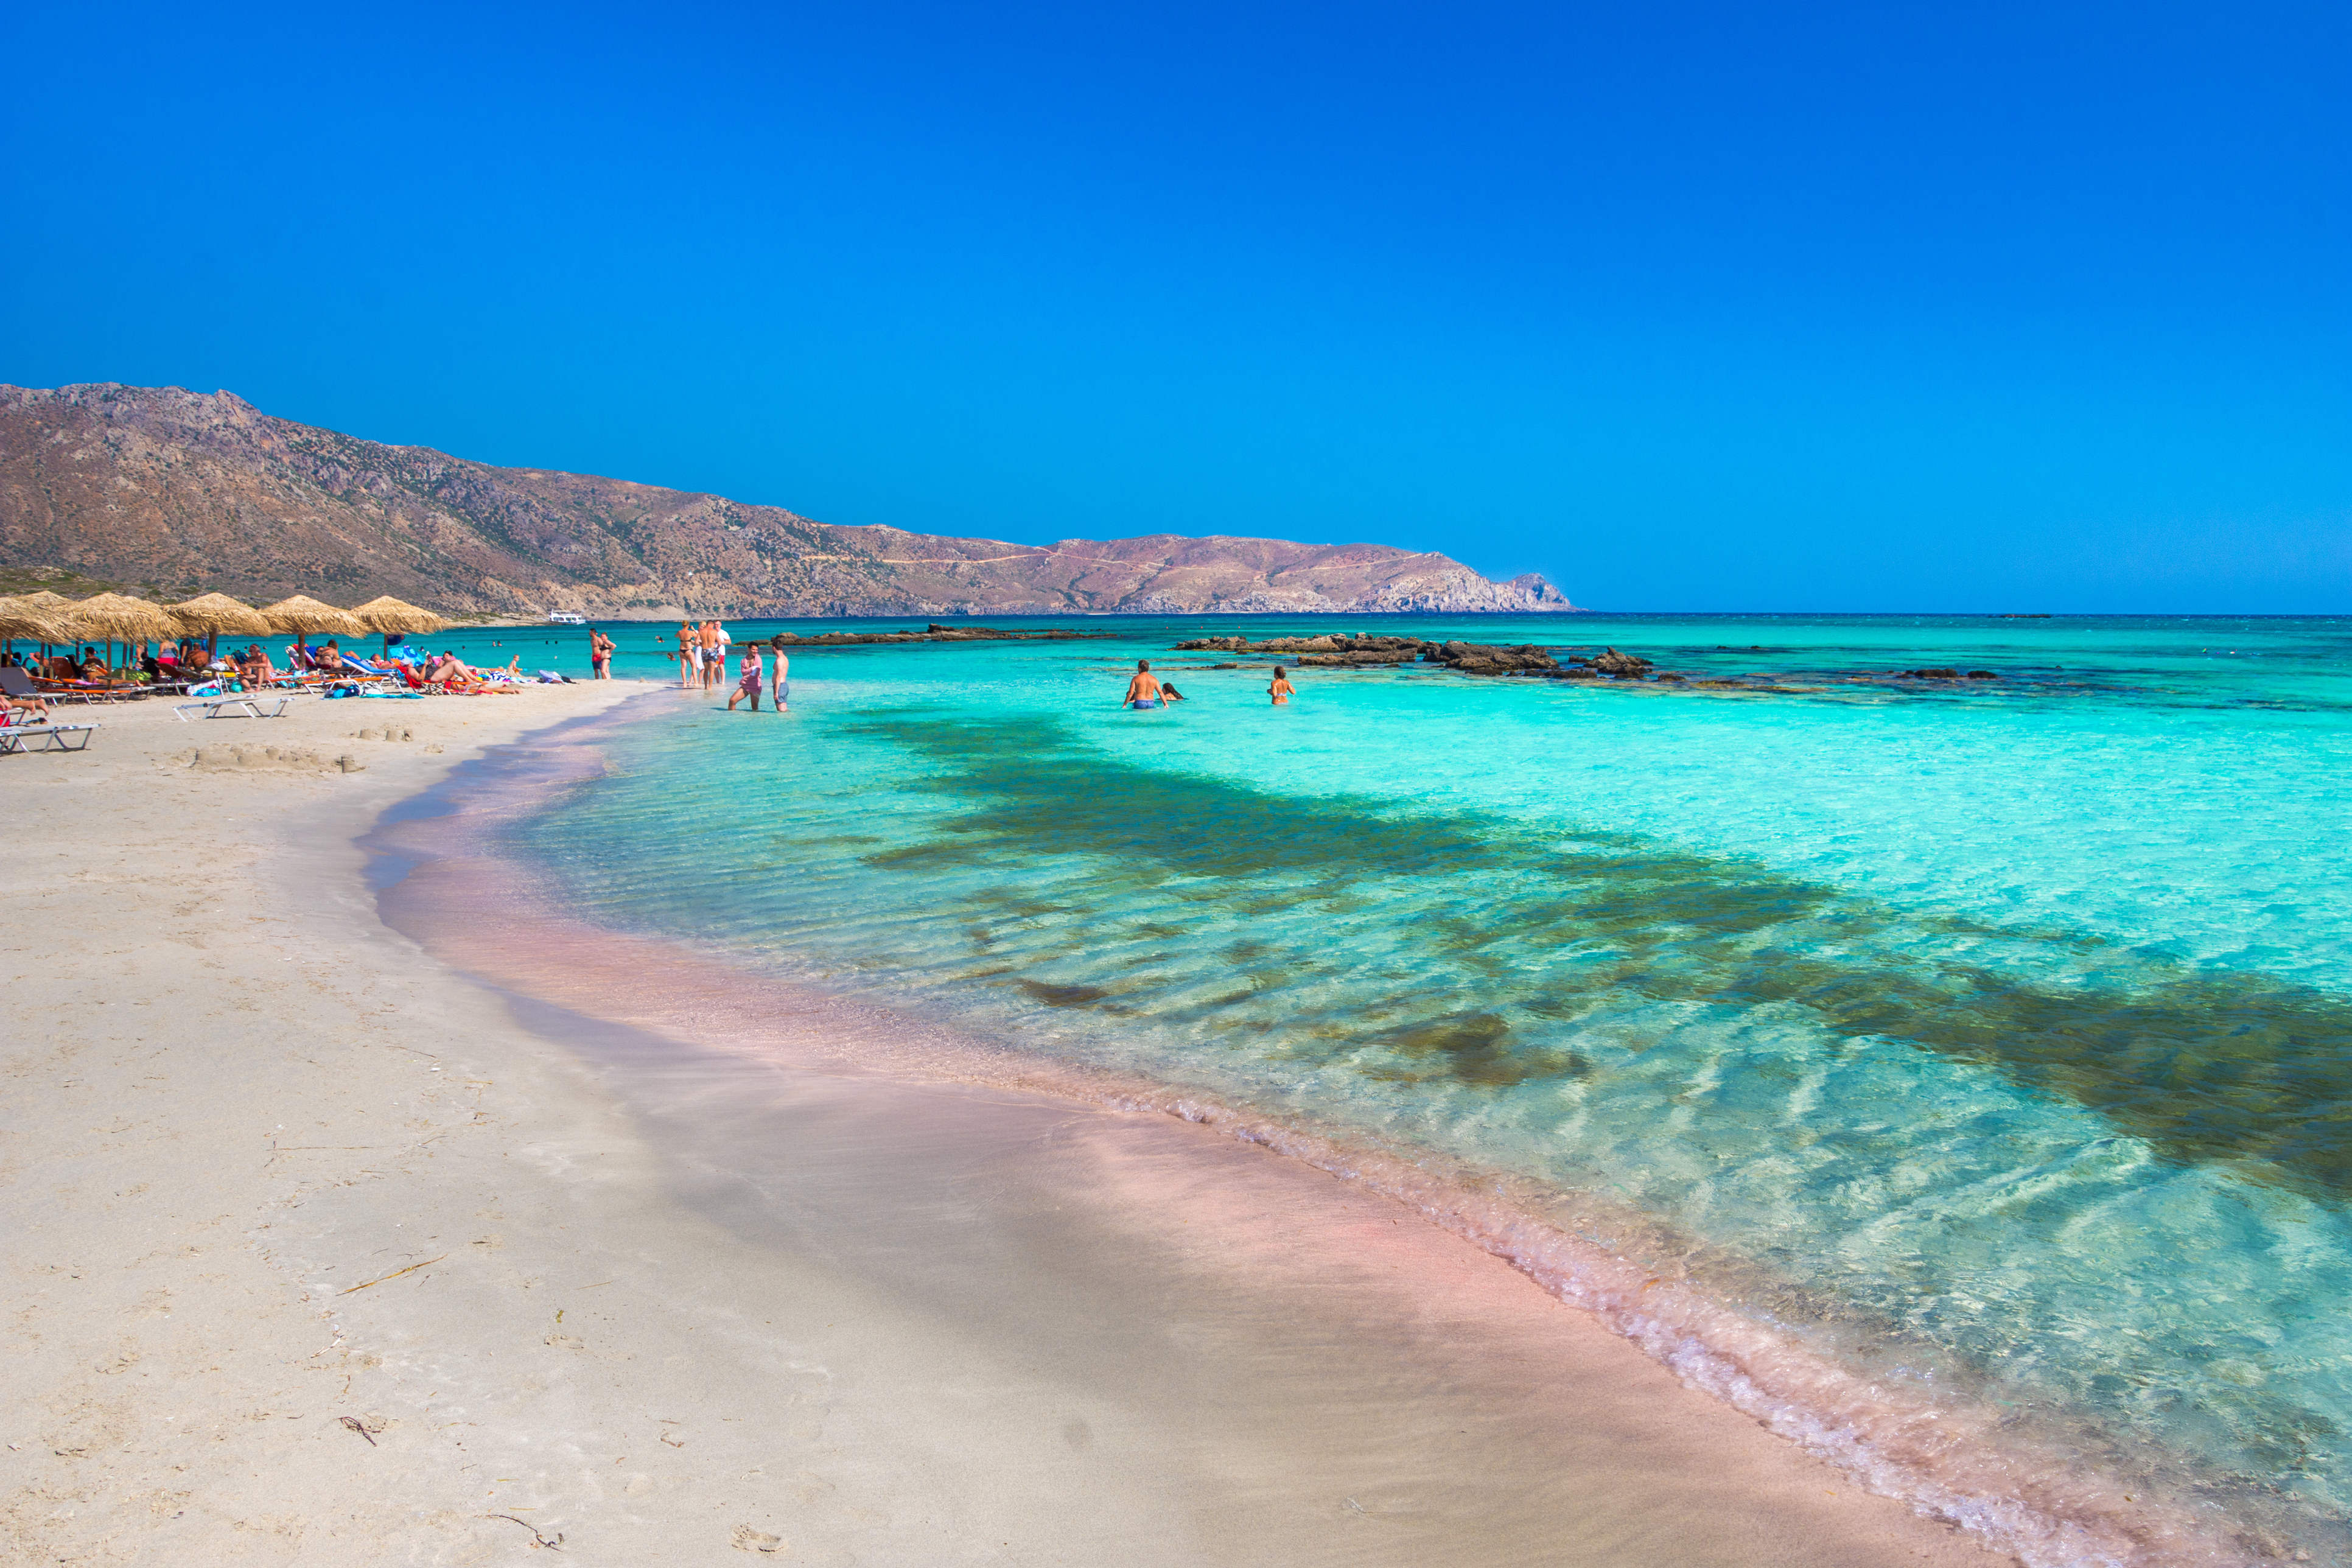 <p>Елафониси, Гърция</p>

<p>Искате да отиде на остров? В Гърция имате доста богат избор: островите там са над 3 000. Най-големият е Крит, който посреща над четири милиона любители на слънцето годишно. Многото заливи, в които морето блести във всички цветове, са предпочитана дестинация на почиващите. Заливът Елафониси със своя фин пясъчен плаж е един от най-красивите.</p>